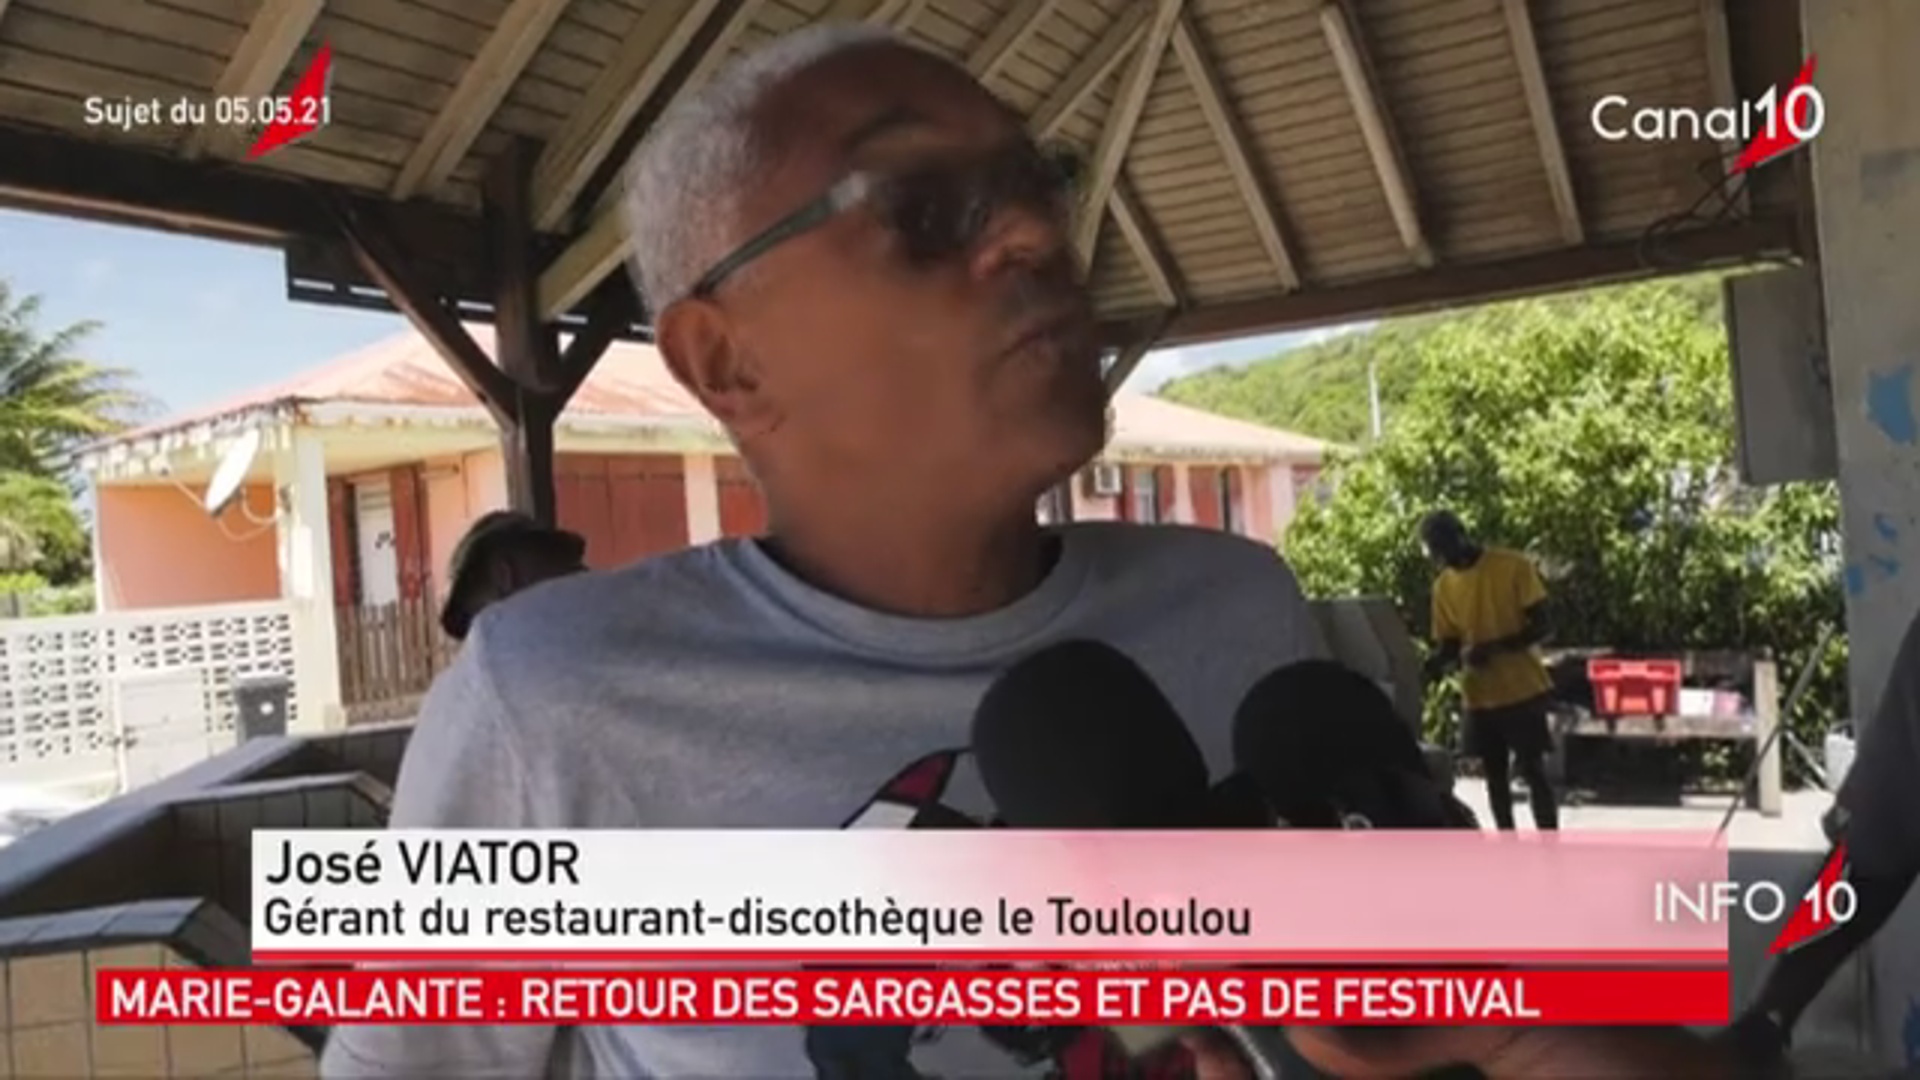 [vidéo] Onews Guadeloupe. Le Jt de canal 10